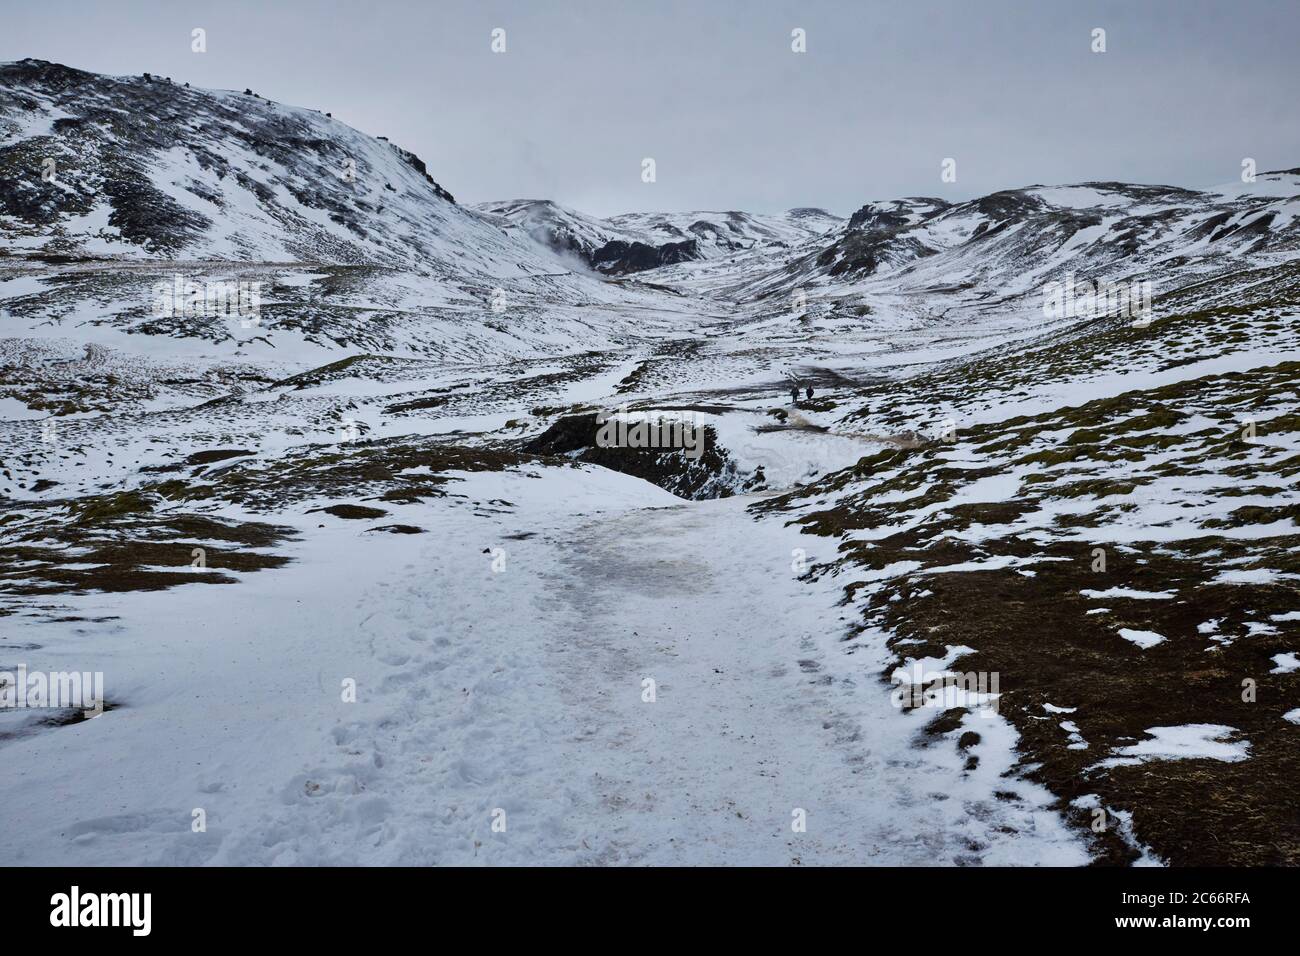 Islandia, el valle de Reykjadalur, Hveragerdi, montañas nevadas y fuentes geotérmicas Foto de stock